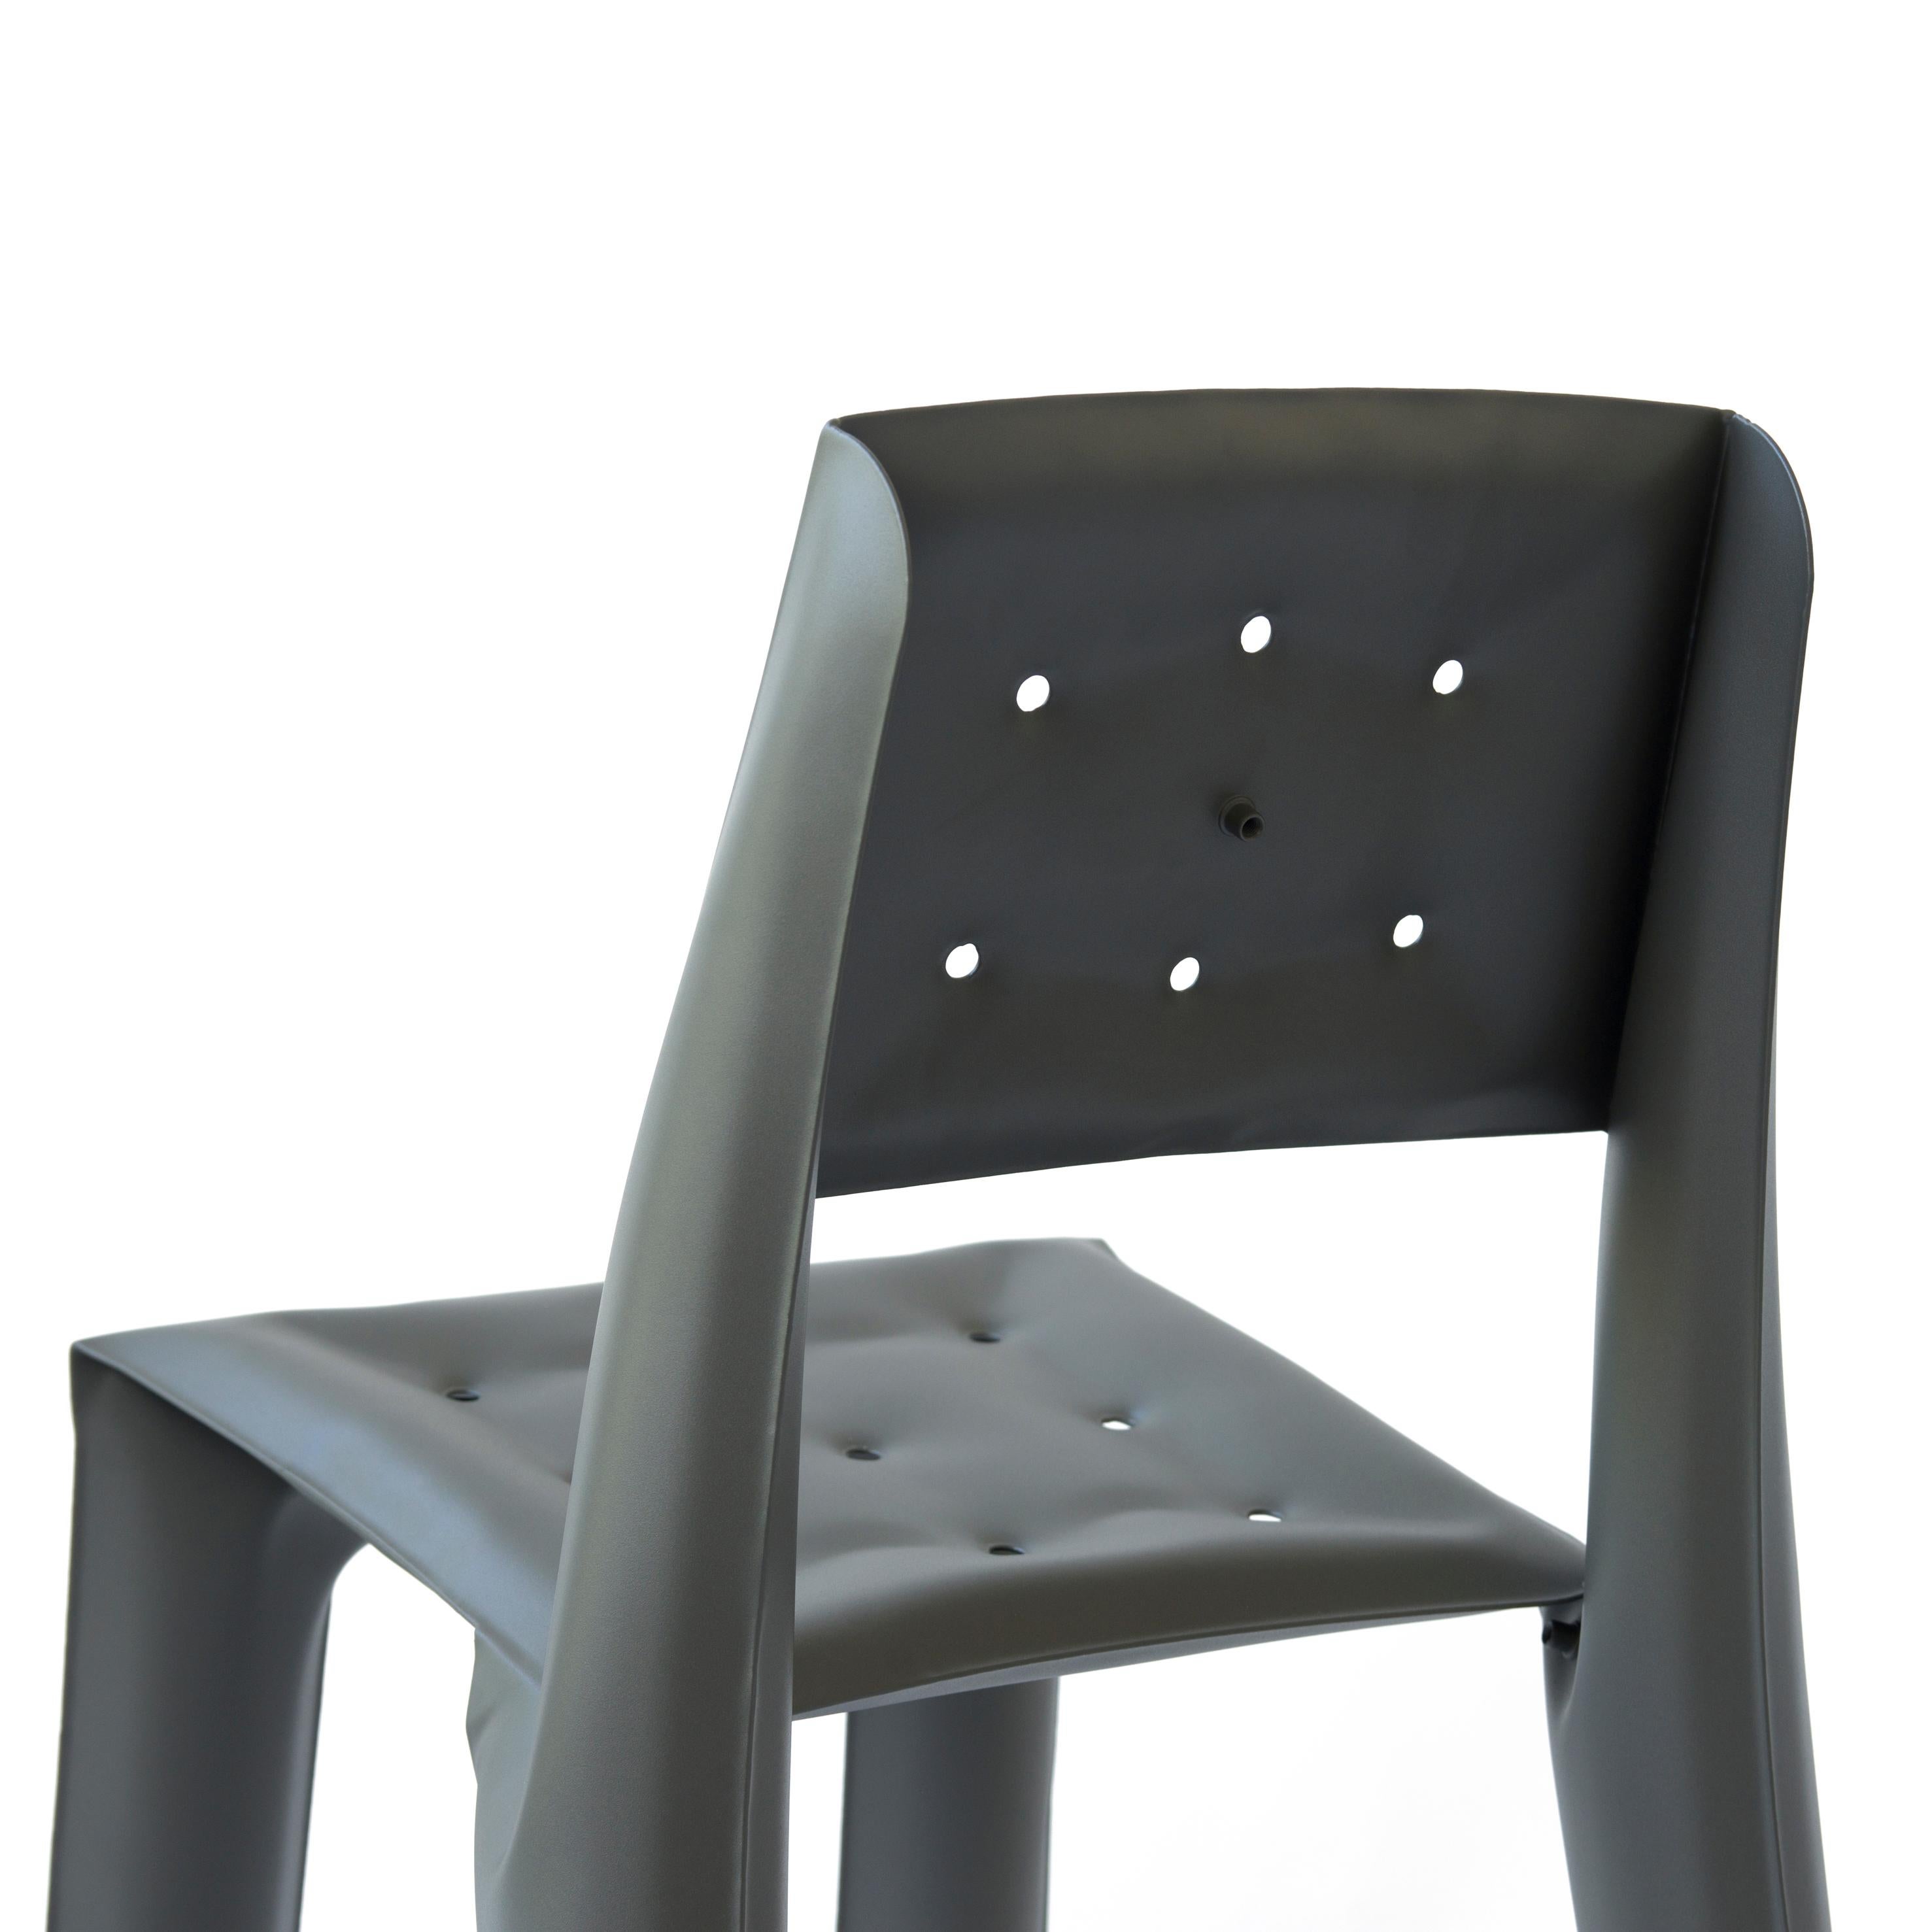 Umbra Grey Carbon Steel Chippensteel 0.5 Sculptural Chair by Zieta For Sale 2